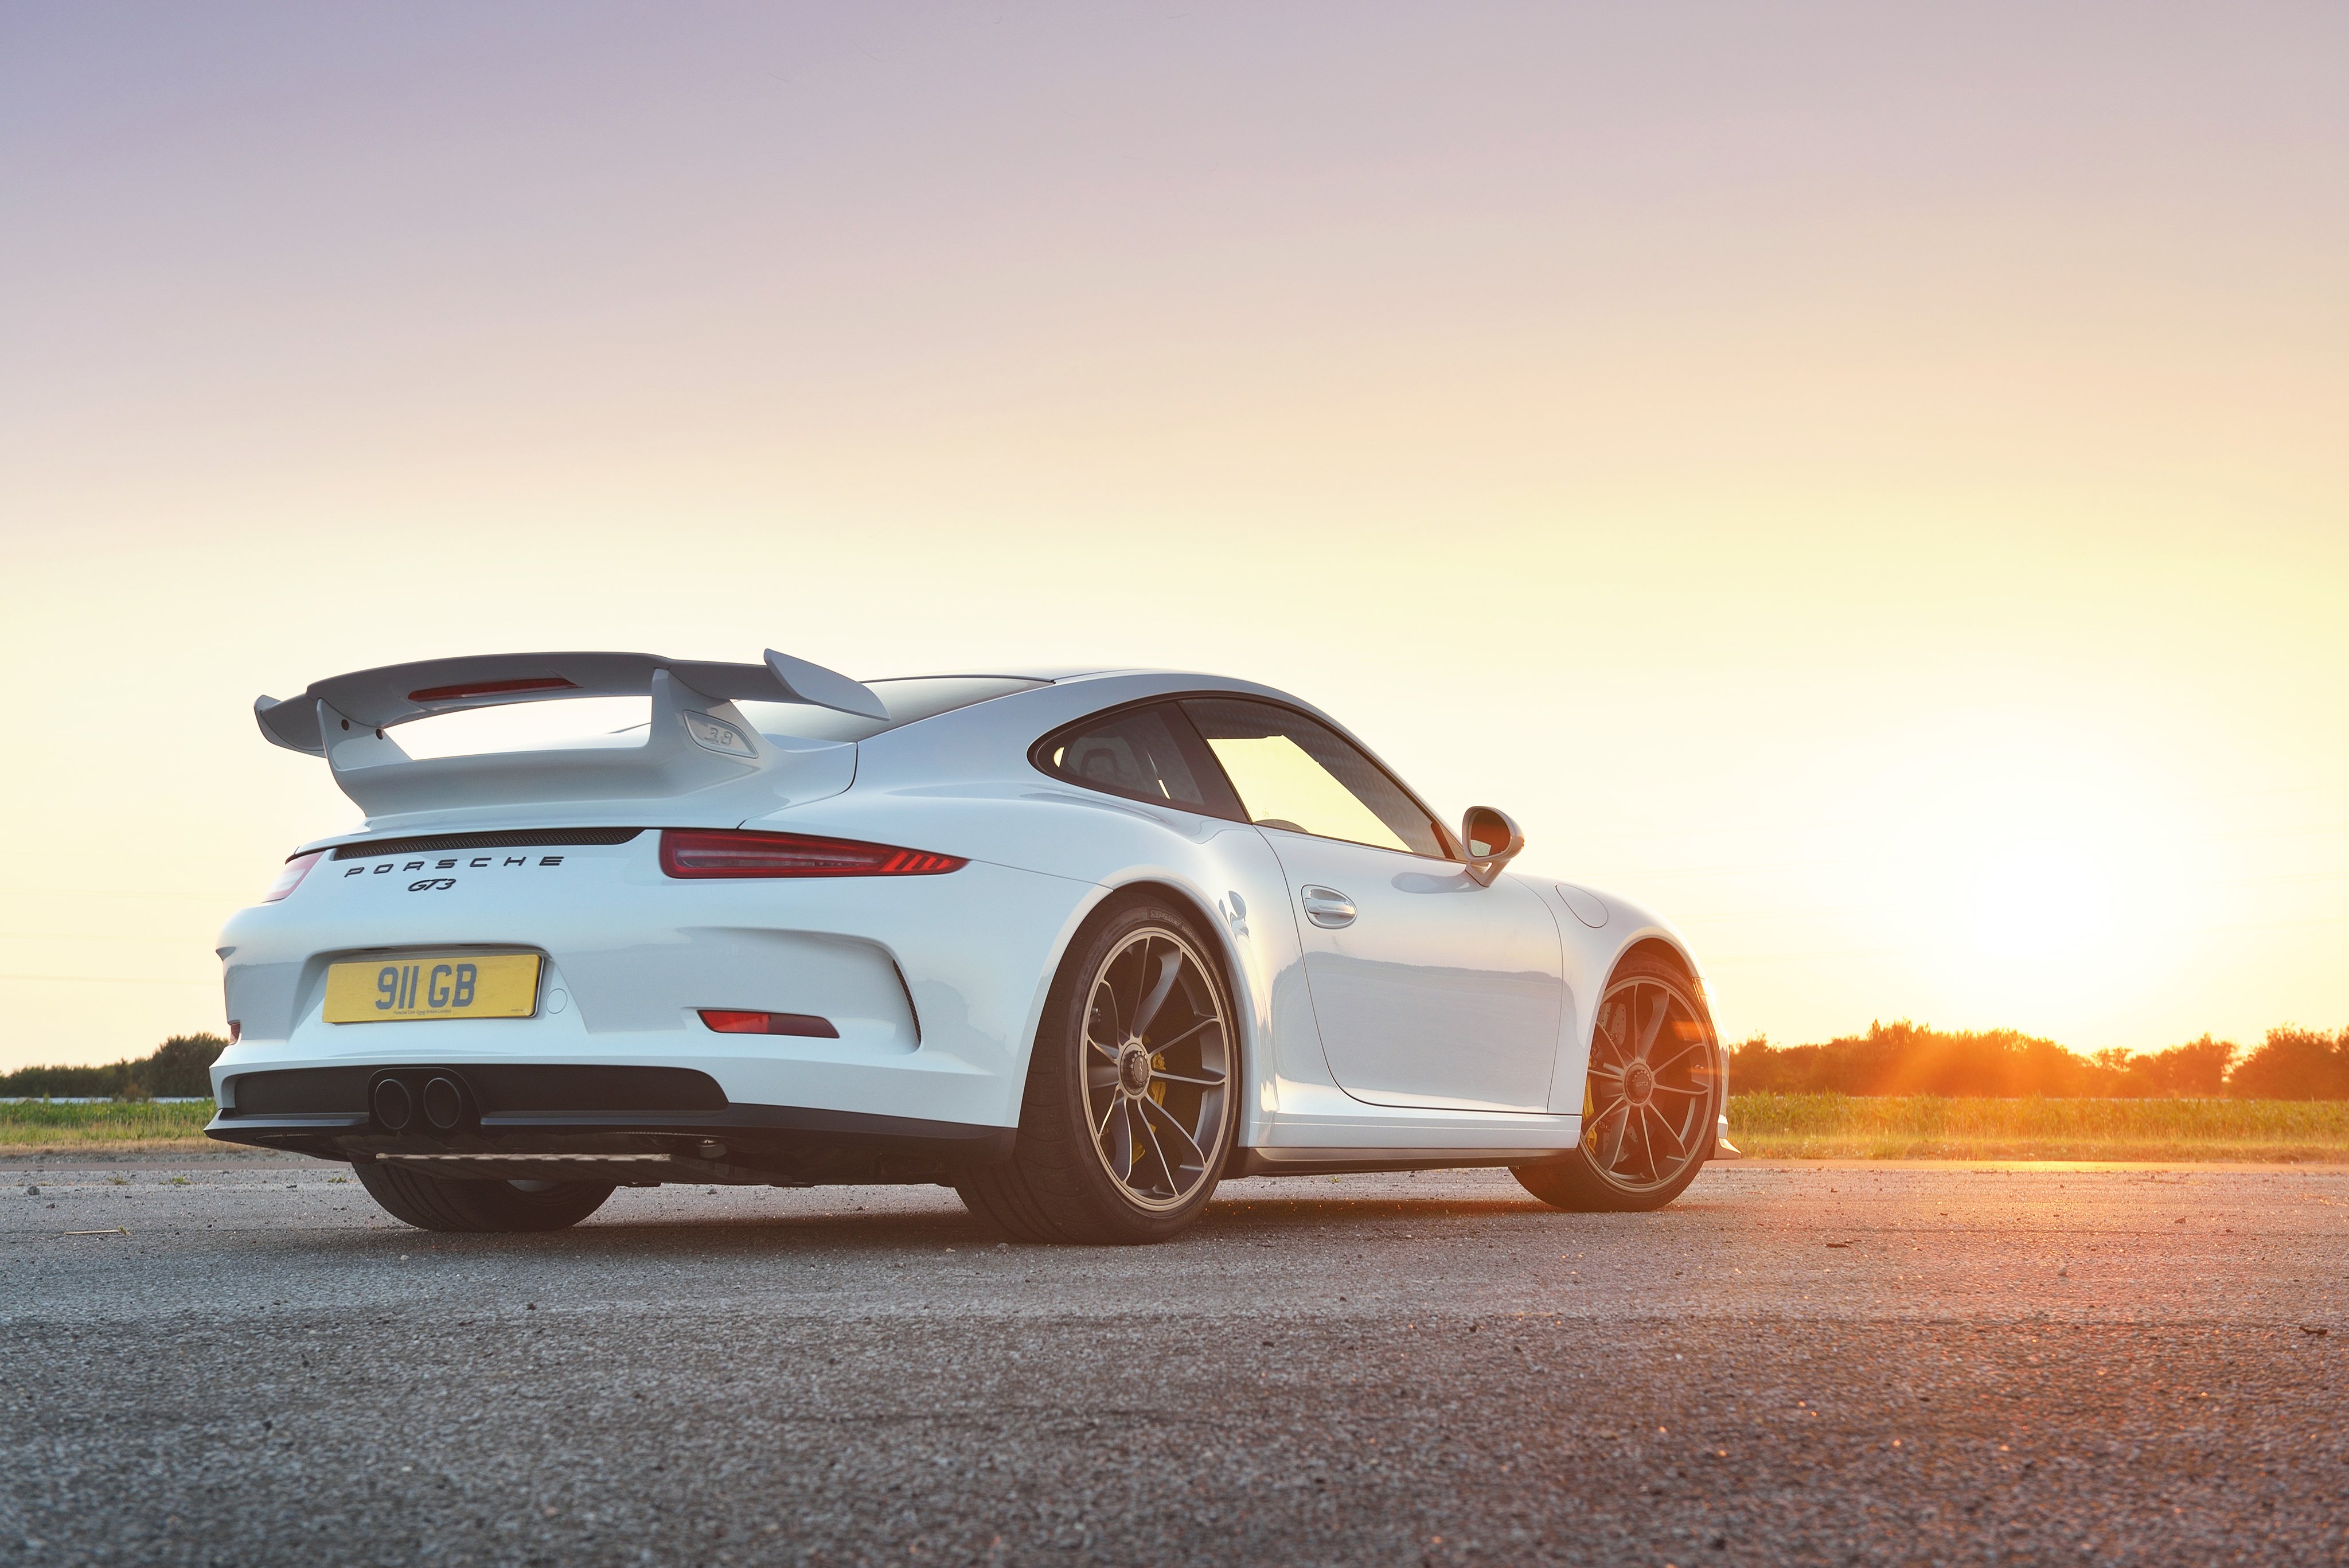 2014 Porsche 911 GT3 UK spec 991 wallpaper 4096x2734 4096x2734